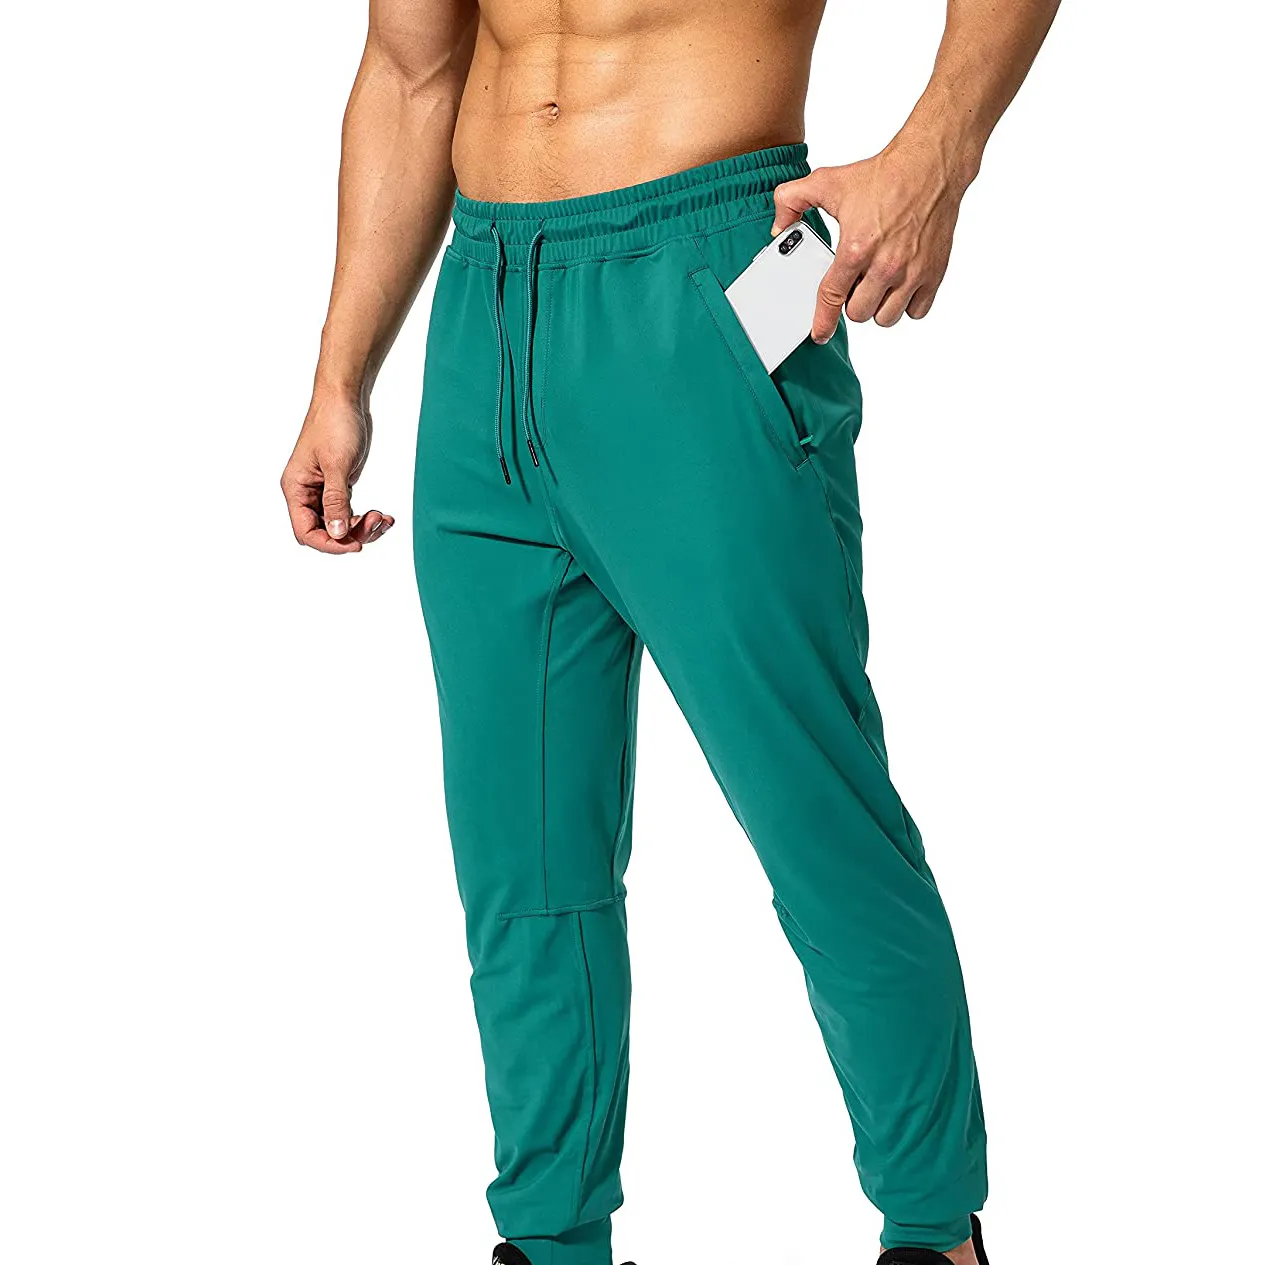 Haute qualité actif hommes pantalons de survêtement personnalisé Slim Fit respirant Sport confortable vêtements de Fitness hommes pantalons de jogging